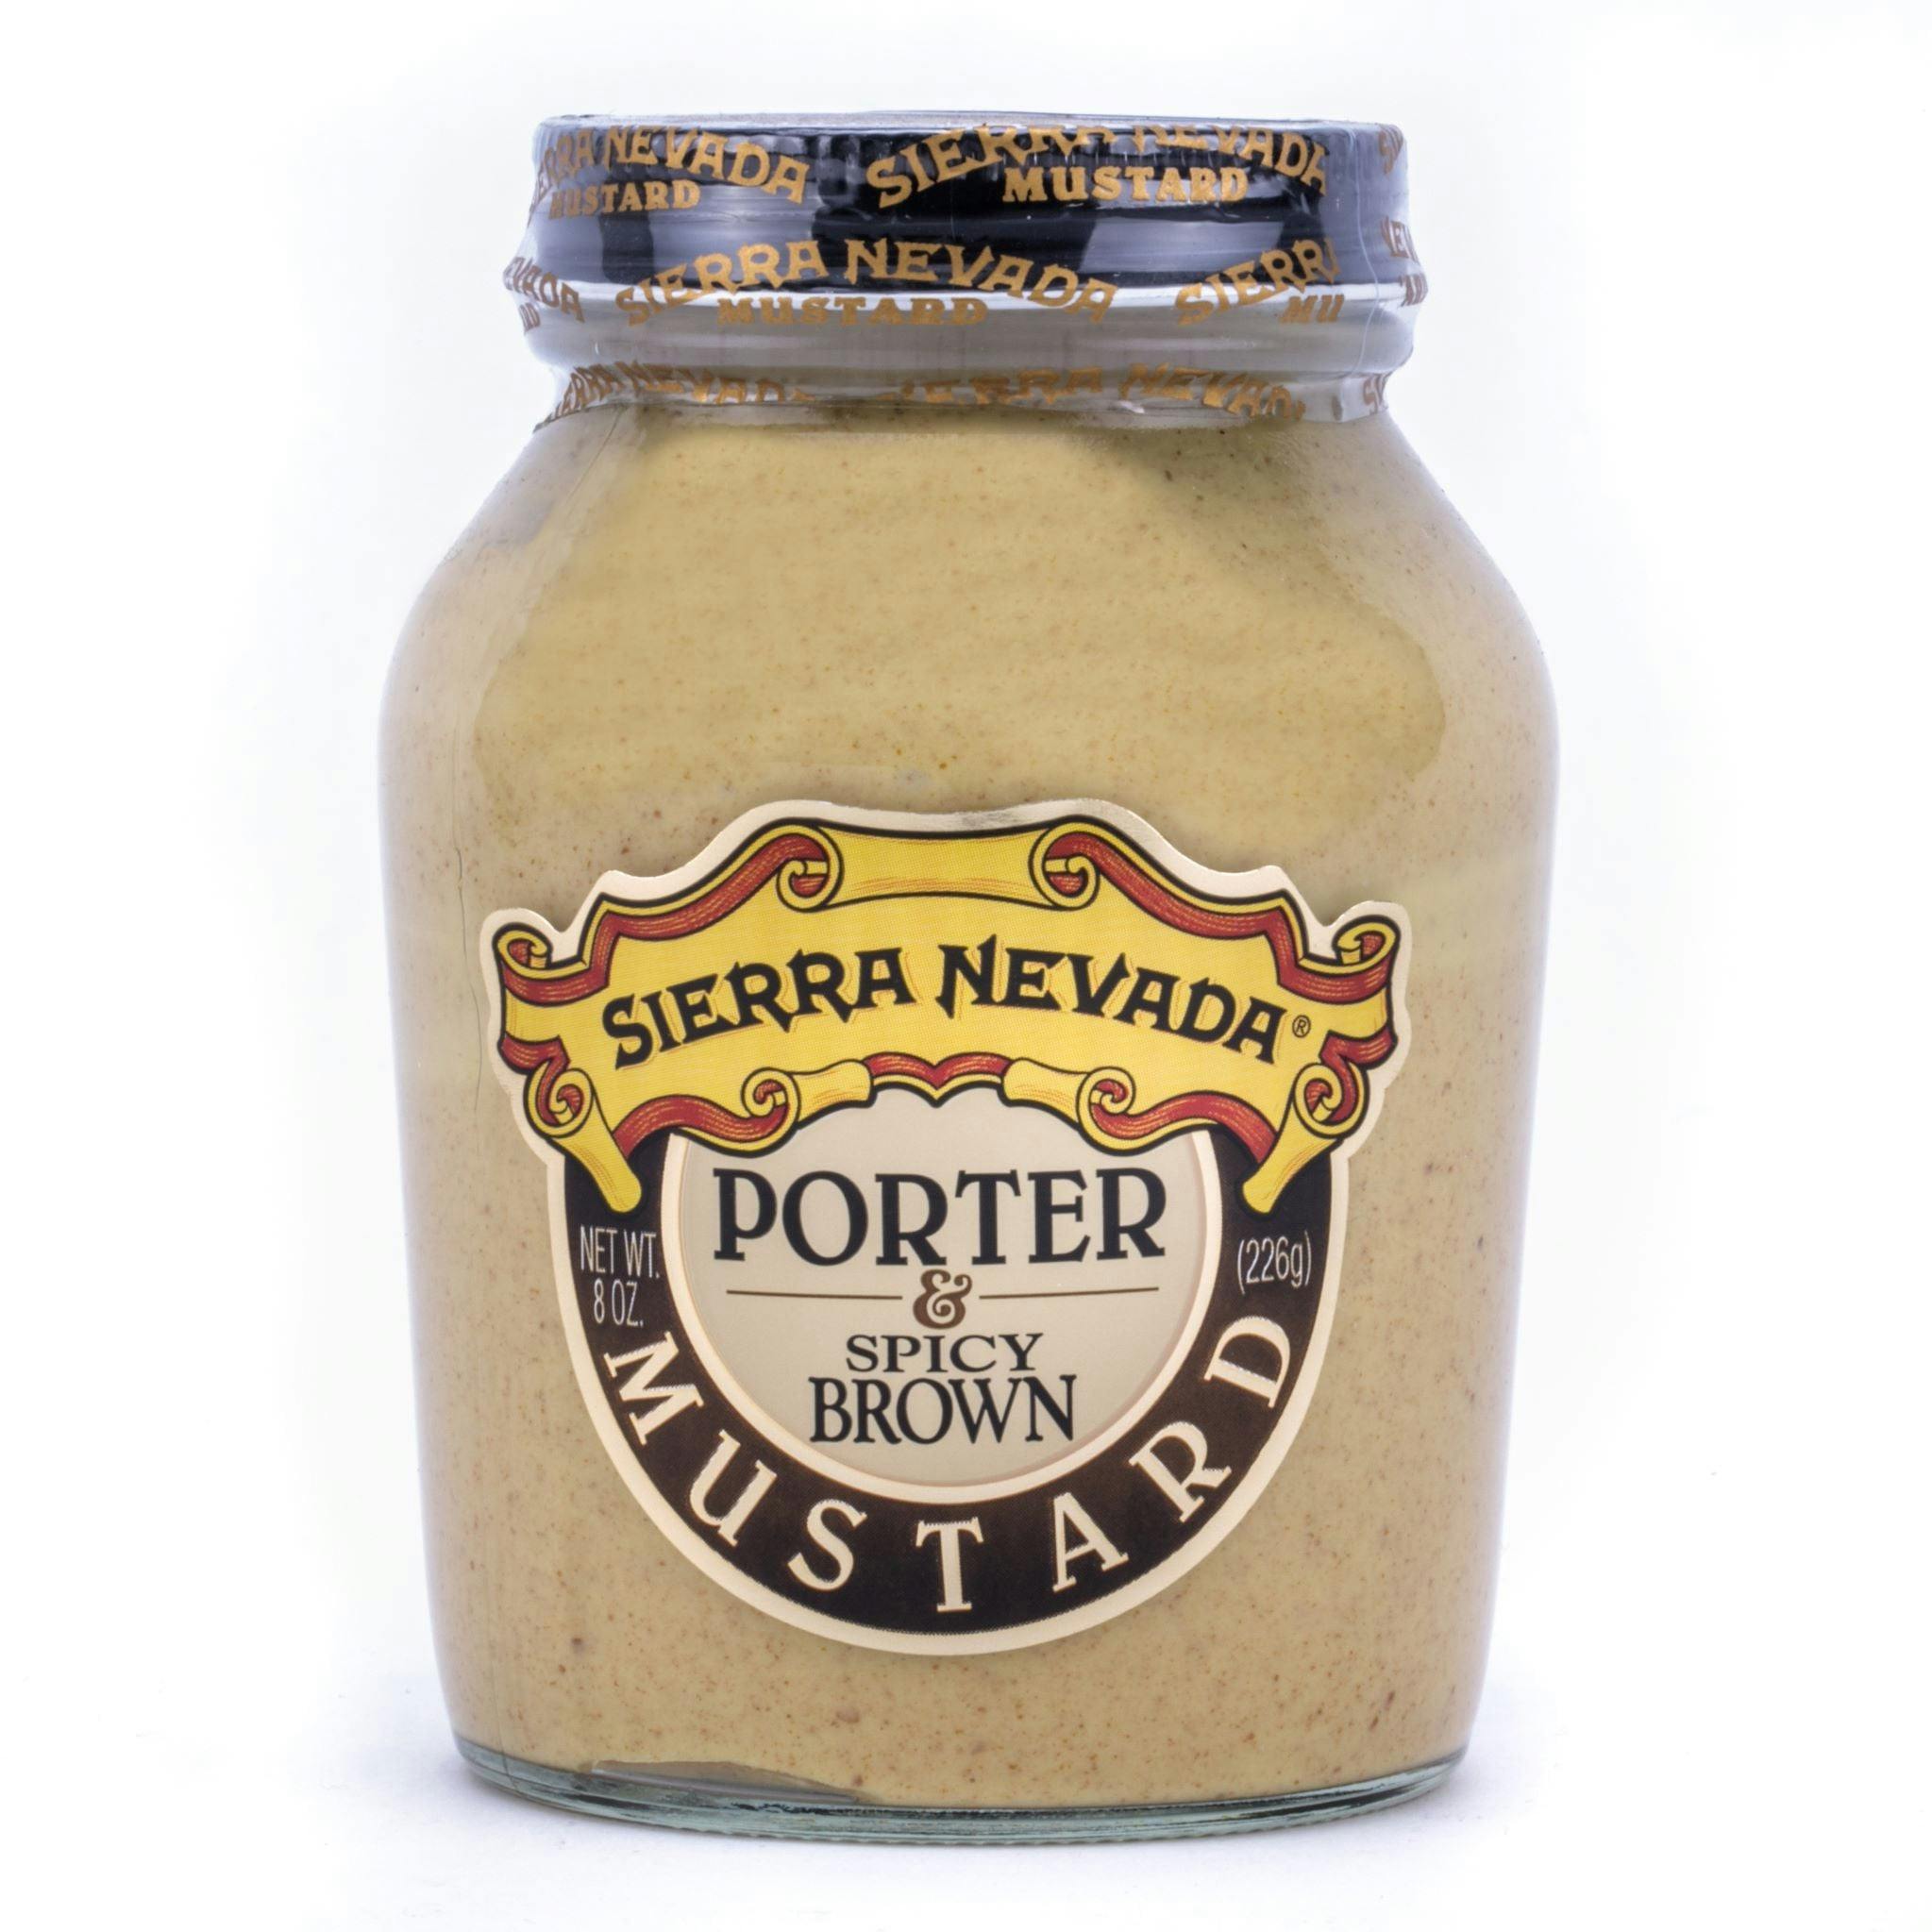 Sierra Nevada Porter spicy brown mustard